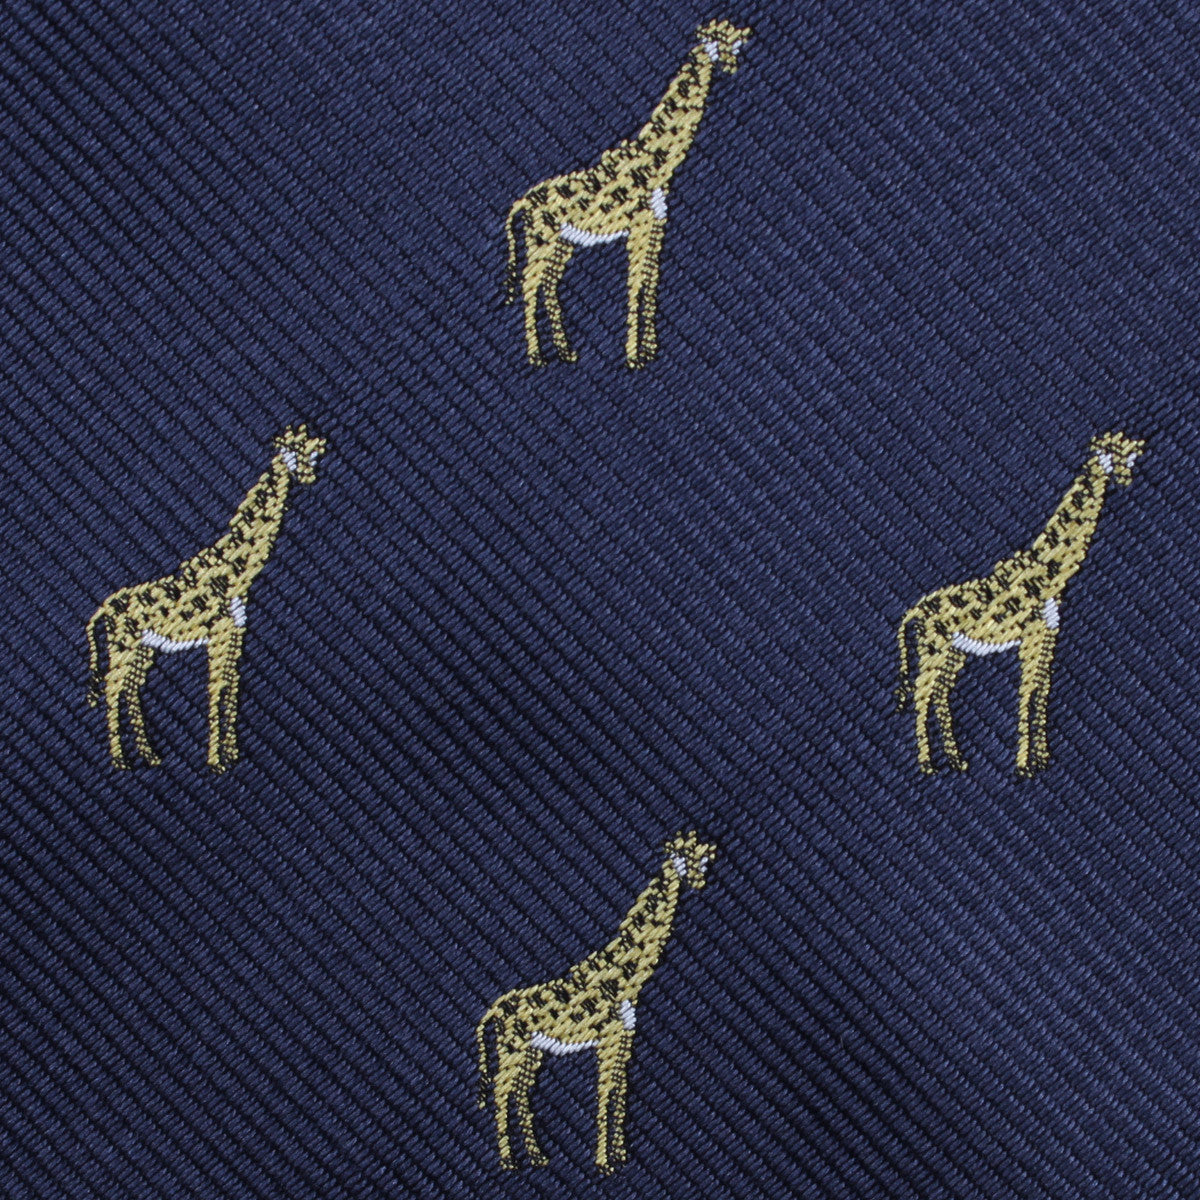 Giraffe Fabric Necktie